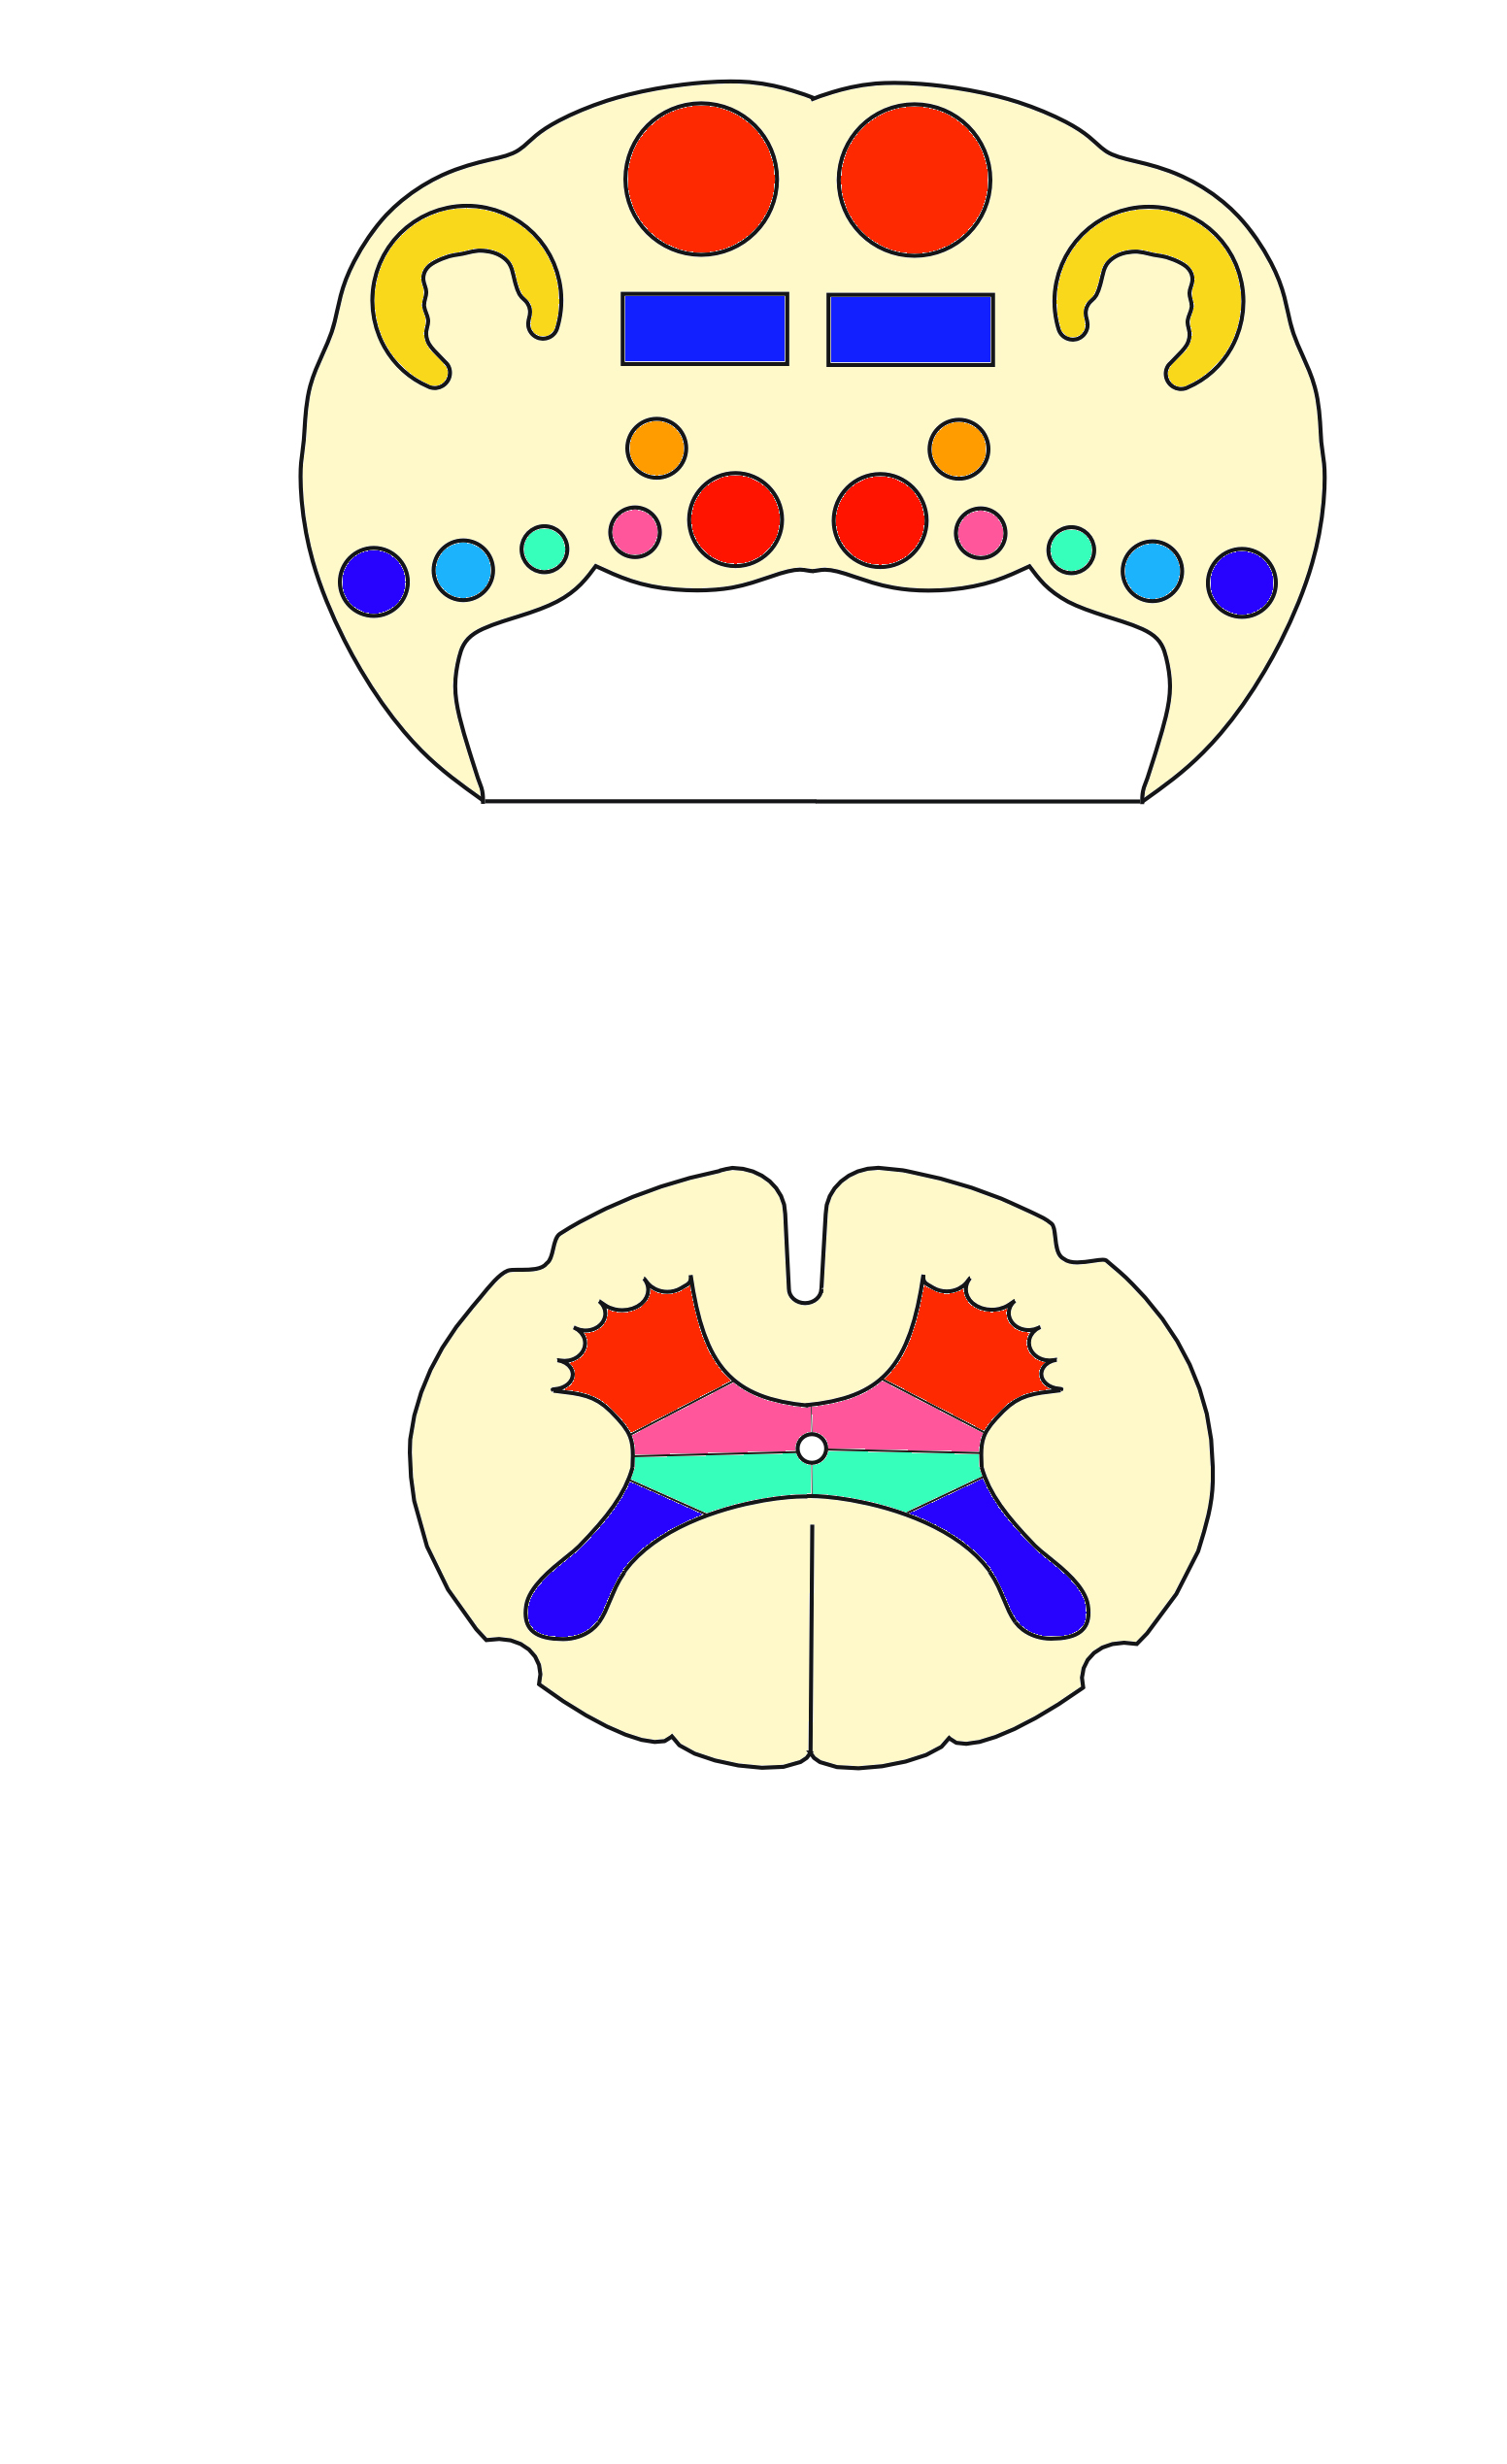 faisceau moteur faisceau sensitif centre suprasegmentaire Partie basilaire noyaux des nerfs crâniens 6 5 4 2 3 1 Tegmentum V4 sulcus limitans Moelle allongée Tectum ventral zone somato-motrice gauche